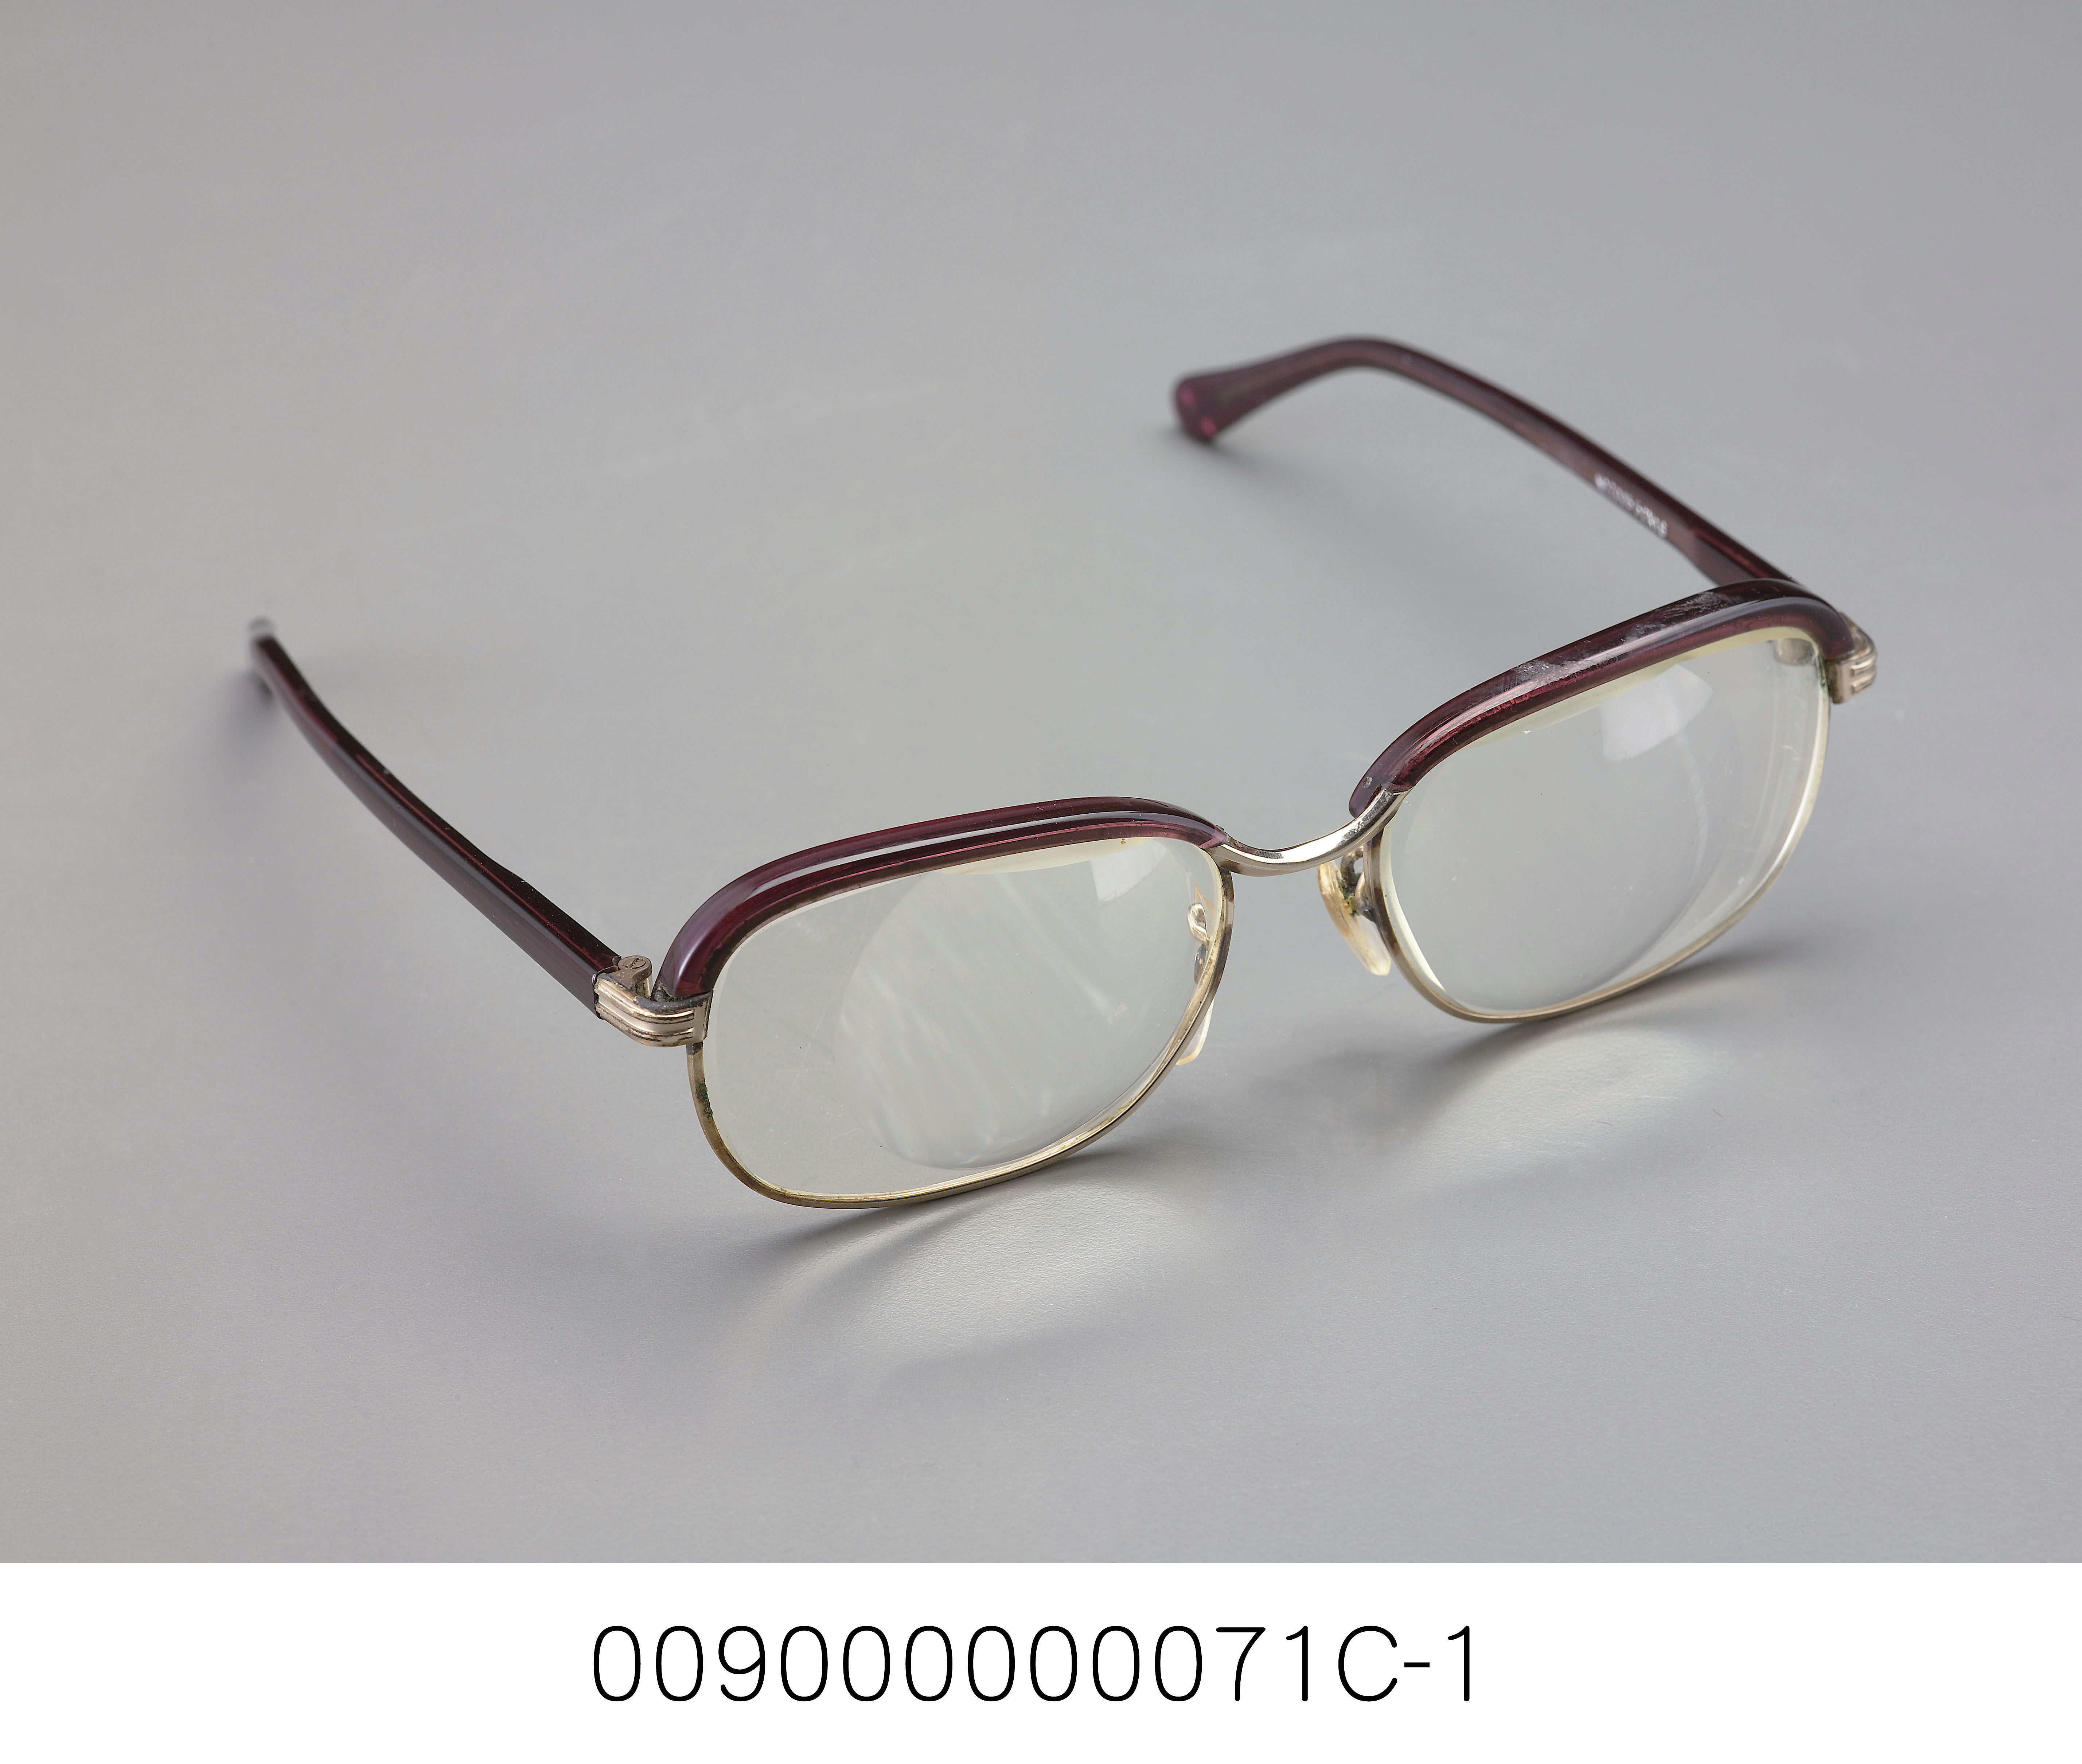 藏品名稱:老花眼鏡件名:老花眼鏡